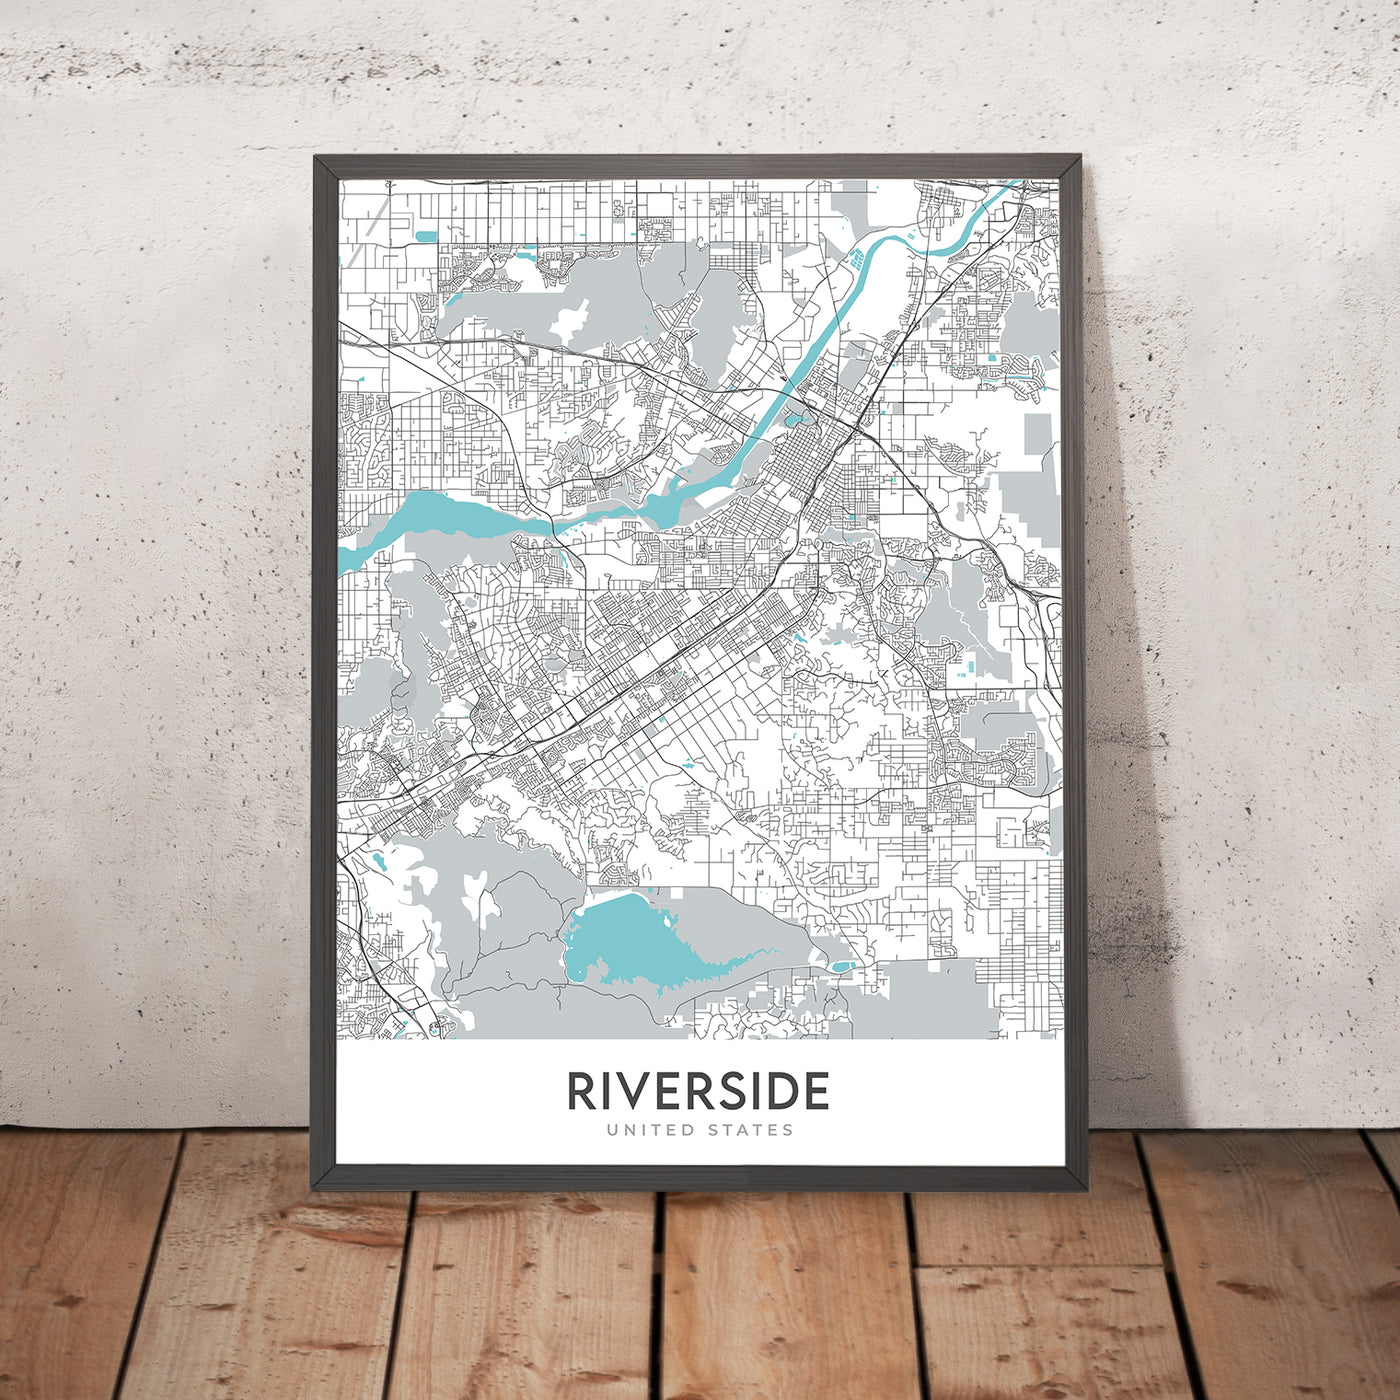 Mapa moderno de la ciudad de Riverside, CA: Arlington, centro de la ciudad, La Sierra, Museo de Arte de Riverside, Universidad de California